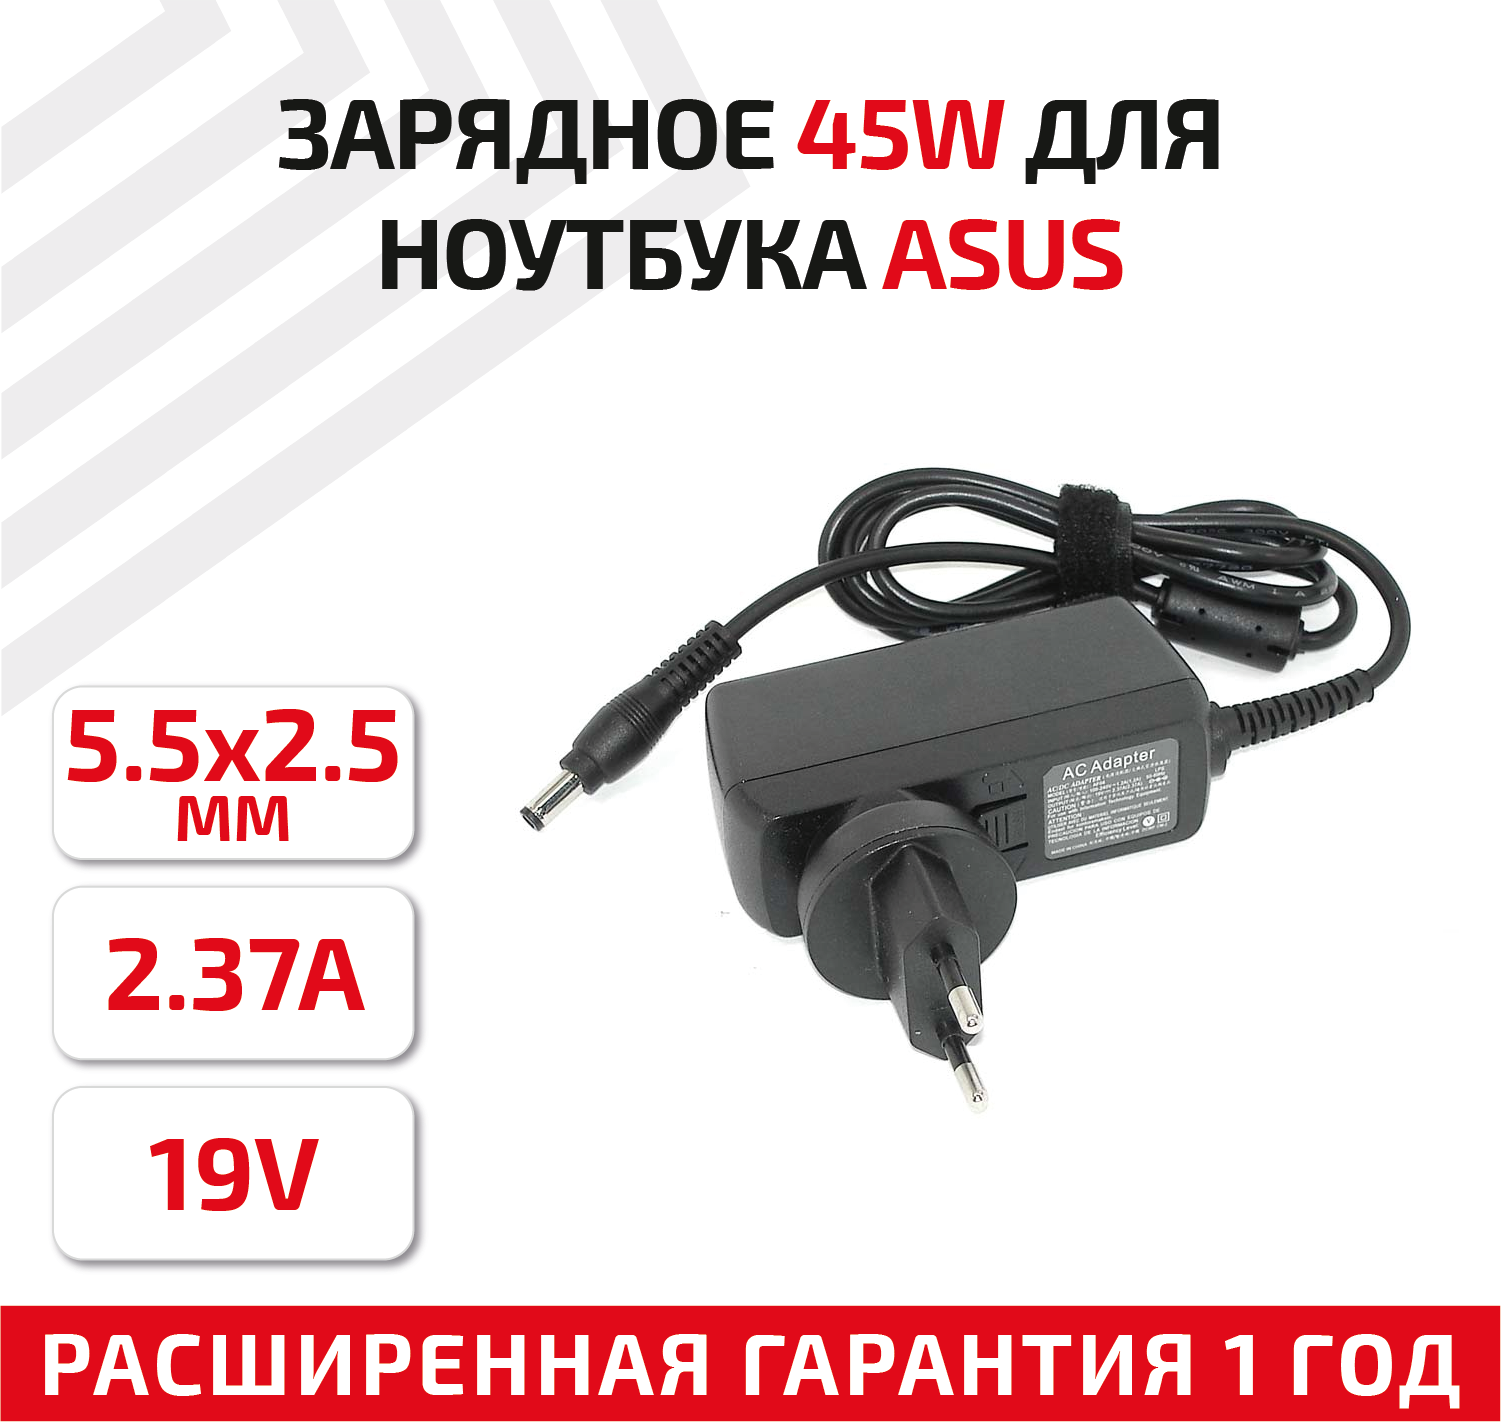 Зарядное устройство (блок питания/зарядка) для ноутбука Asus 19В, 2.37А, 45Вт, 5.5x2.5мм, Travel Charger